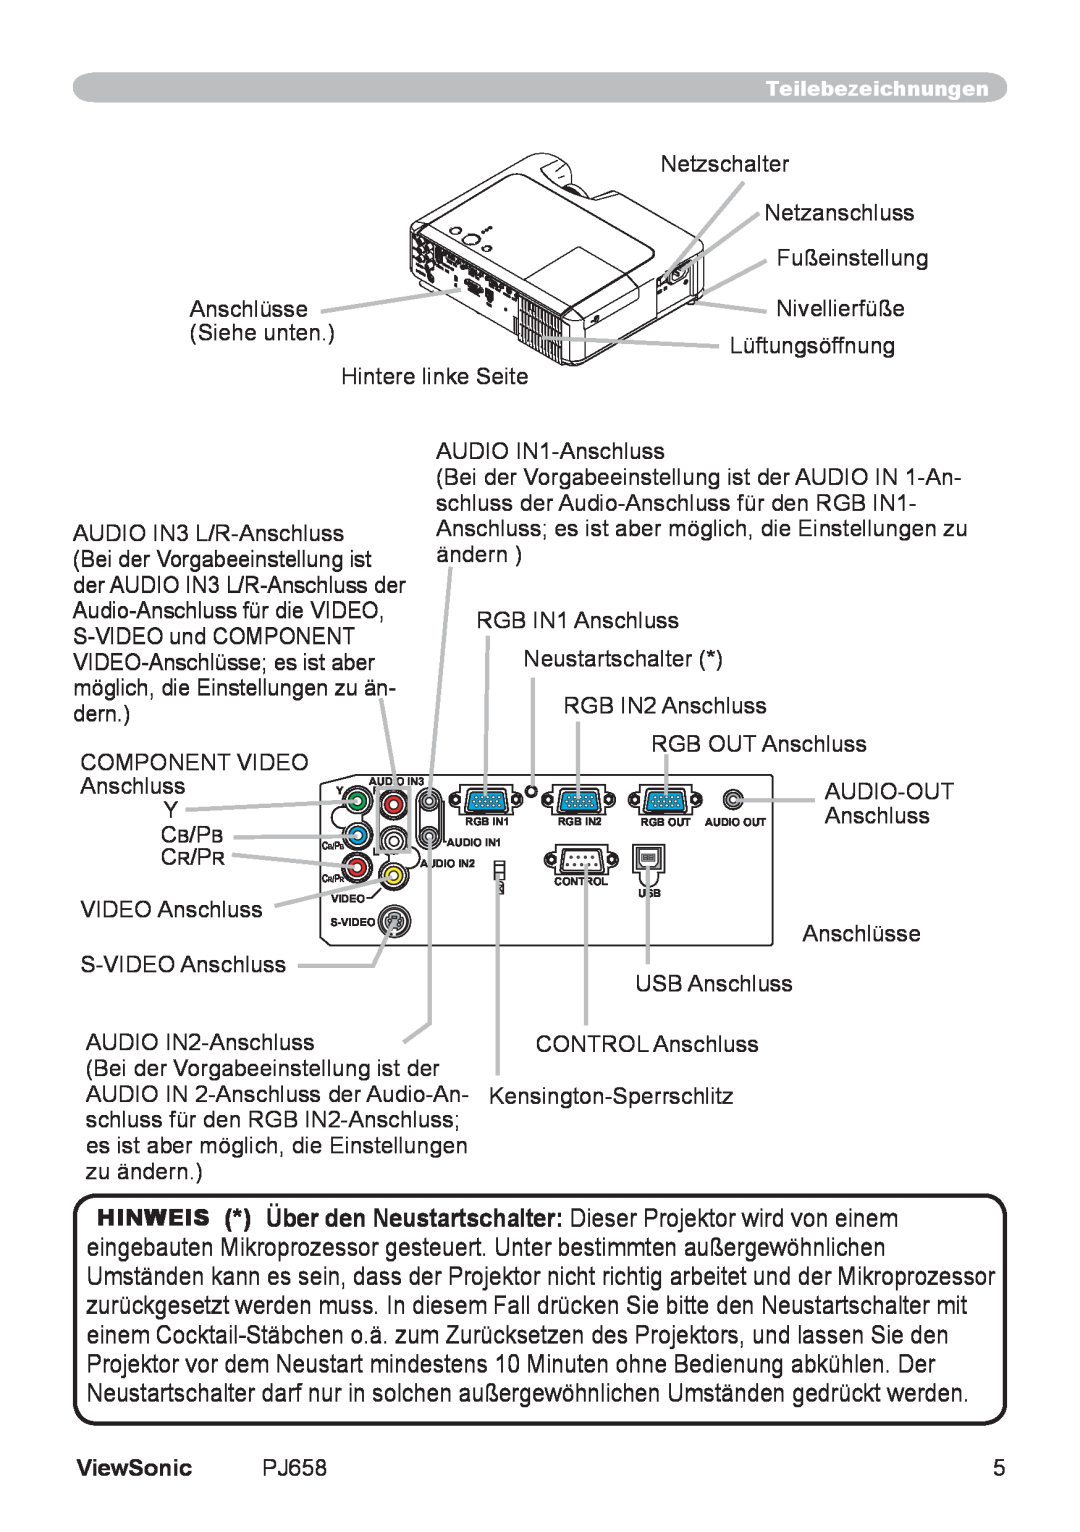 ViewSonic VS11361 manual Netzschalter, ViewSonic 